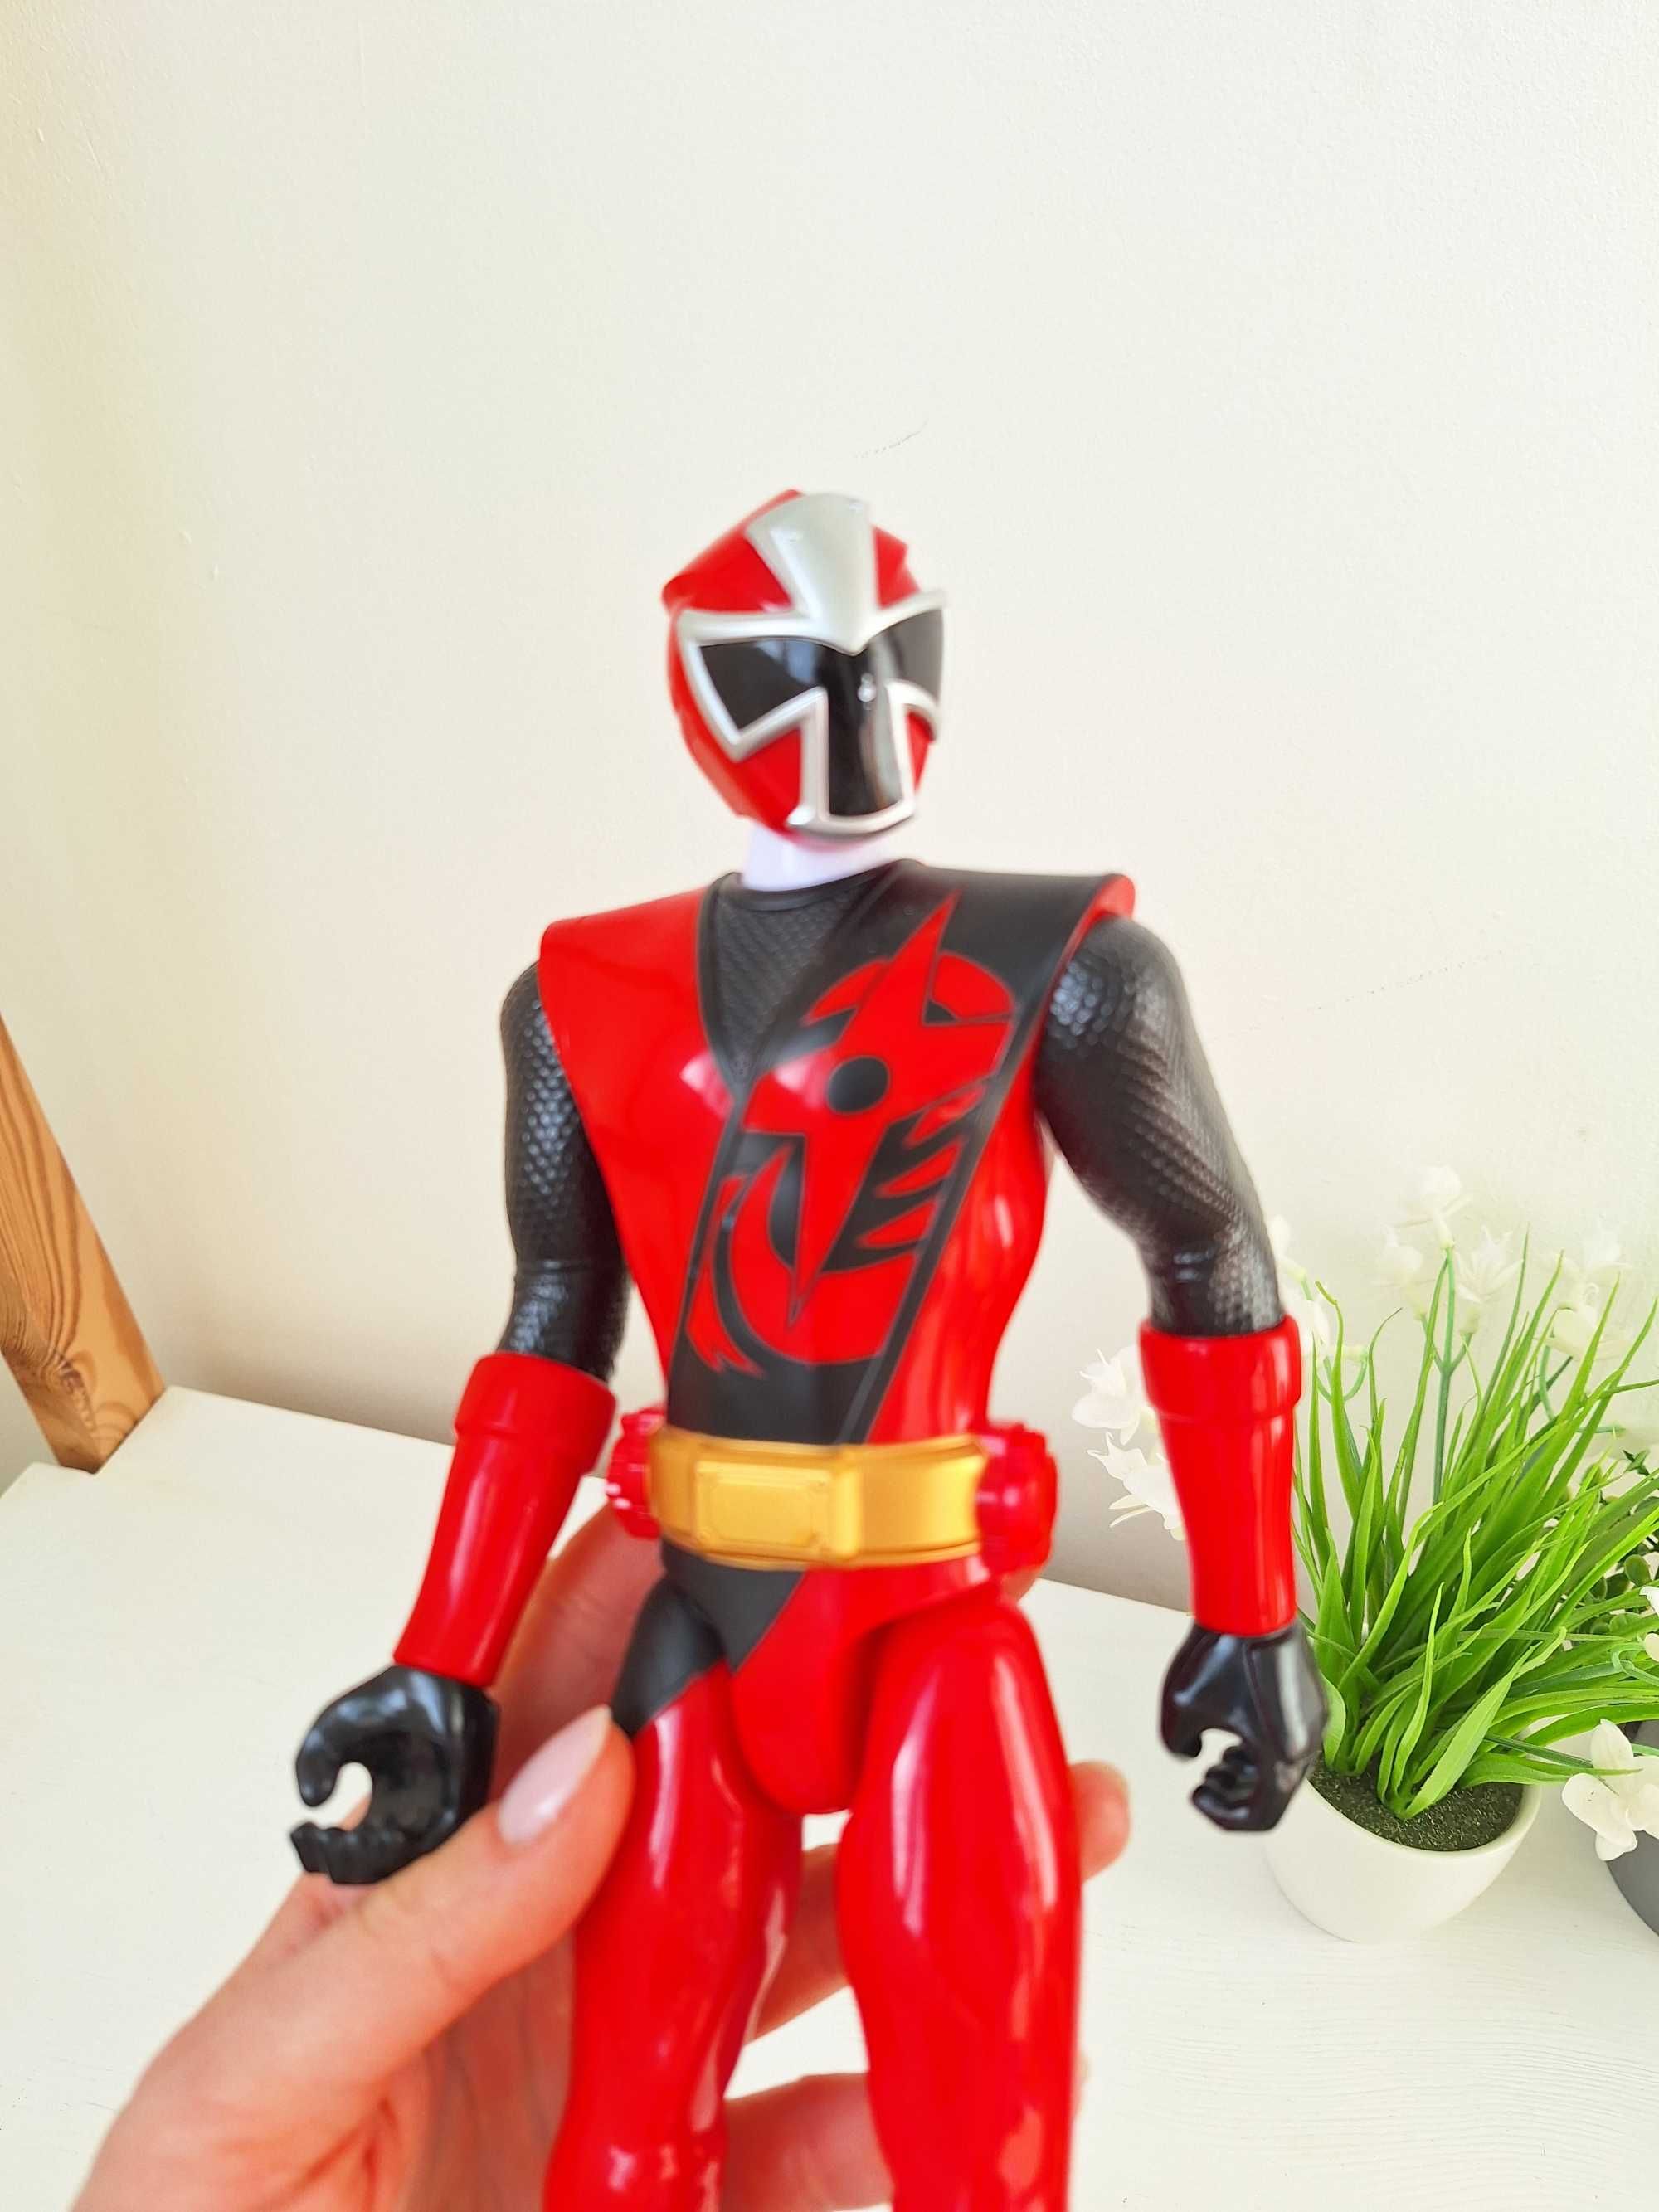 Супергерой, фігурка power ranger ninja